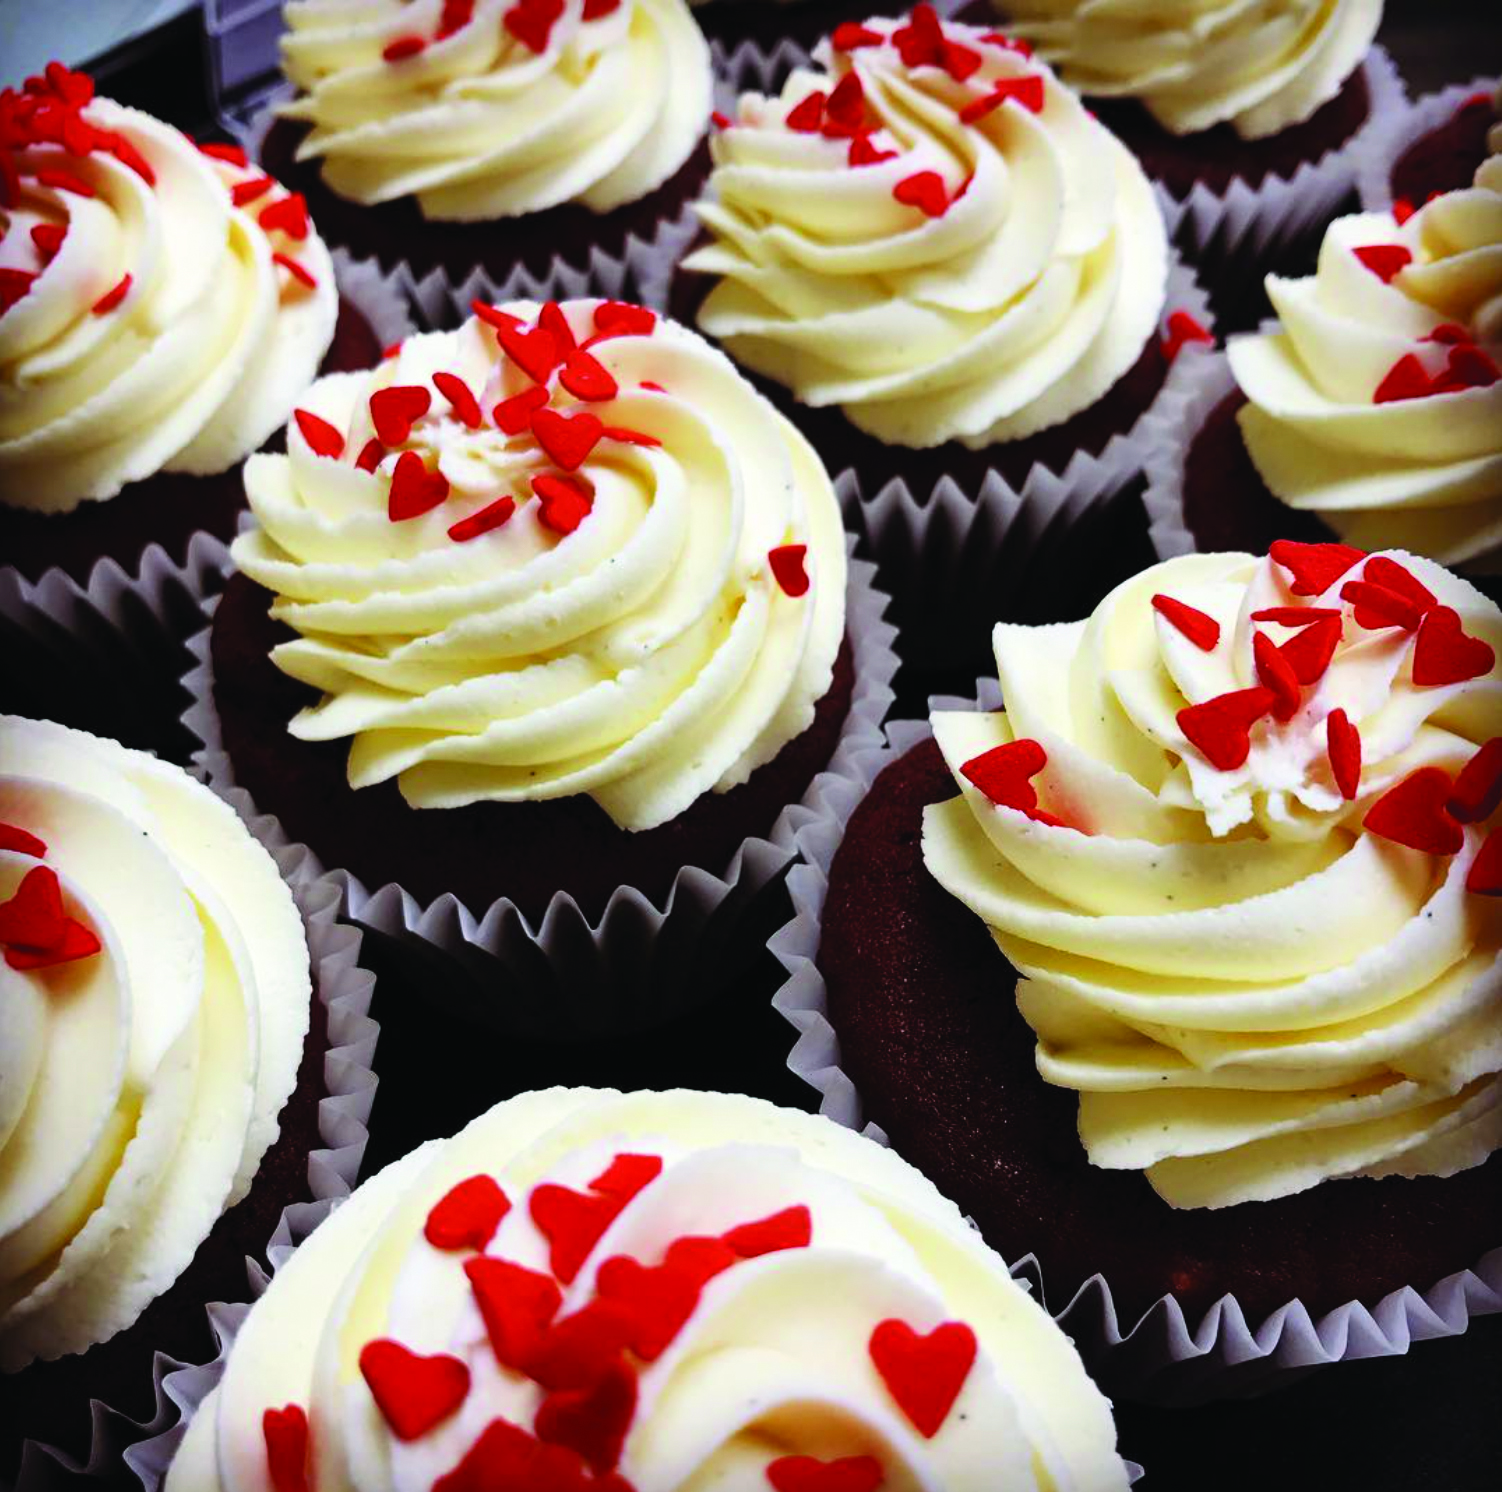 Luis Troyano's red velvet cupcakes